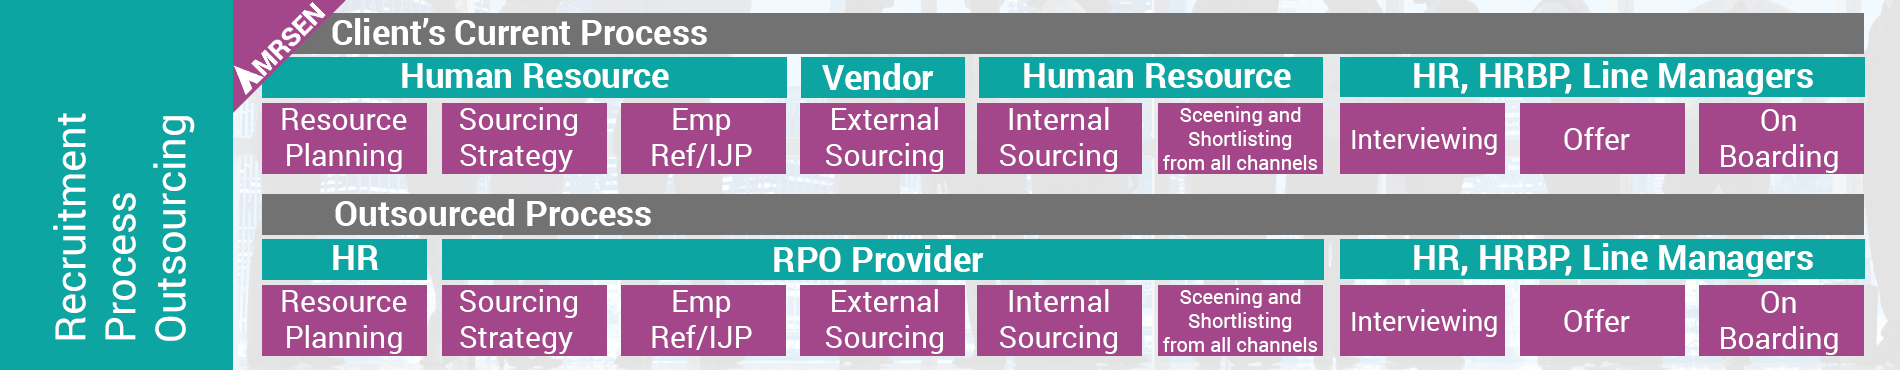 rpo services provider